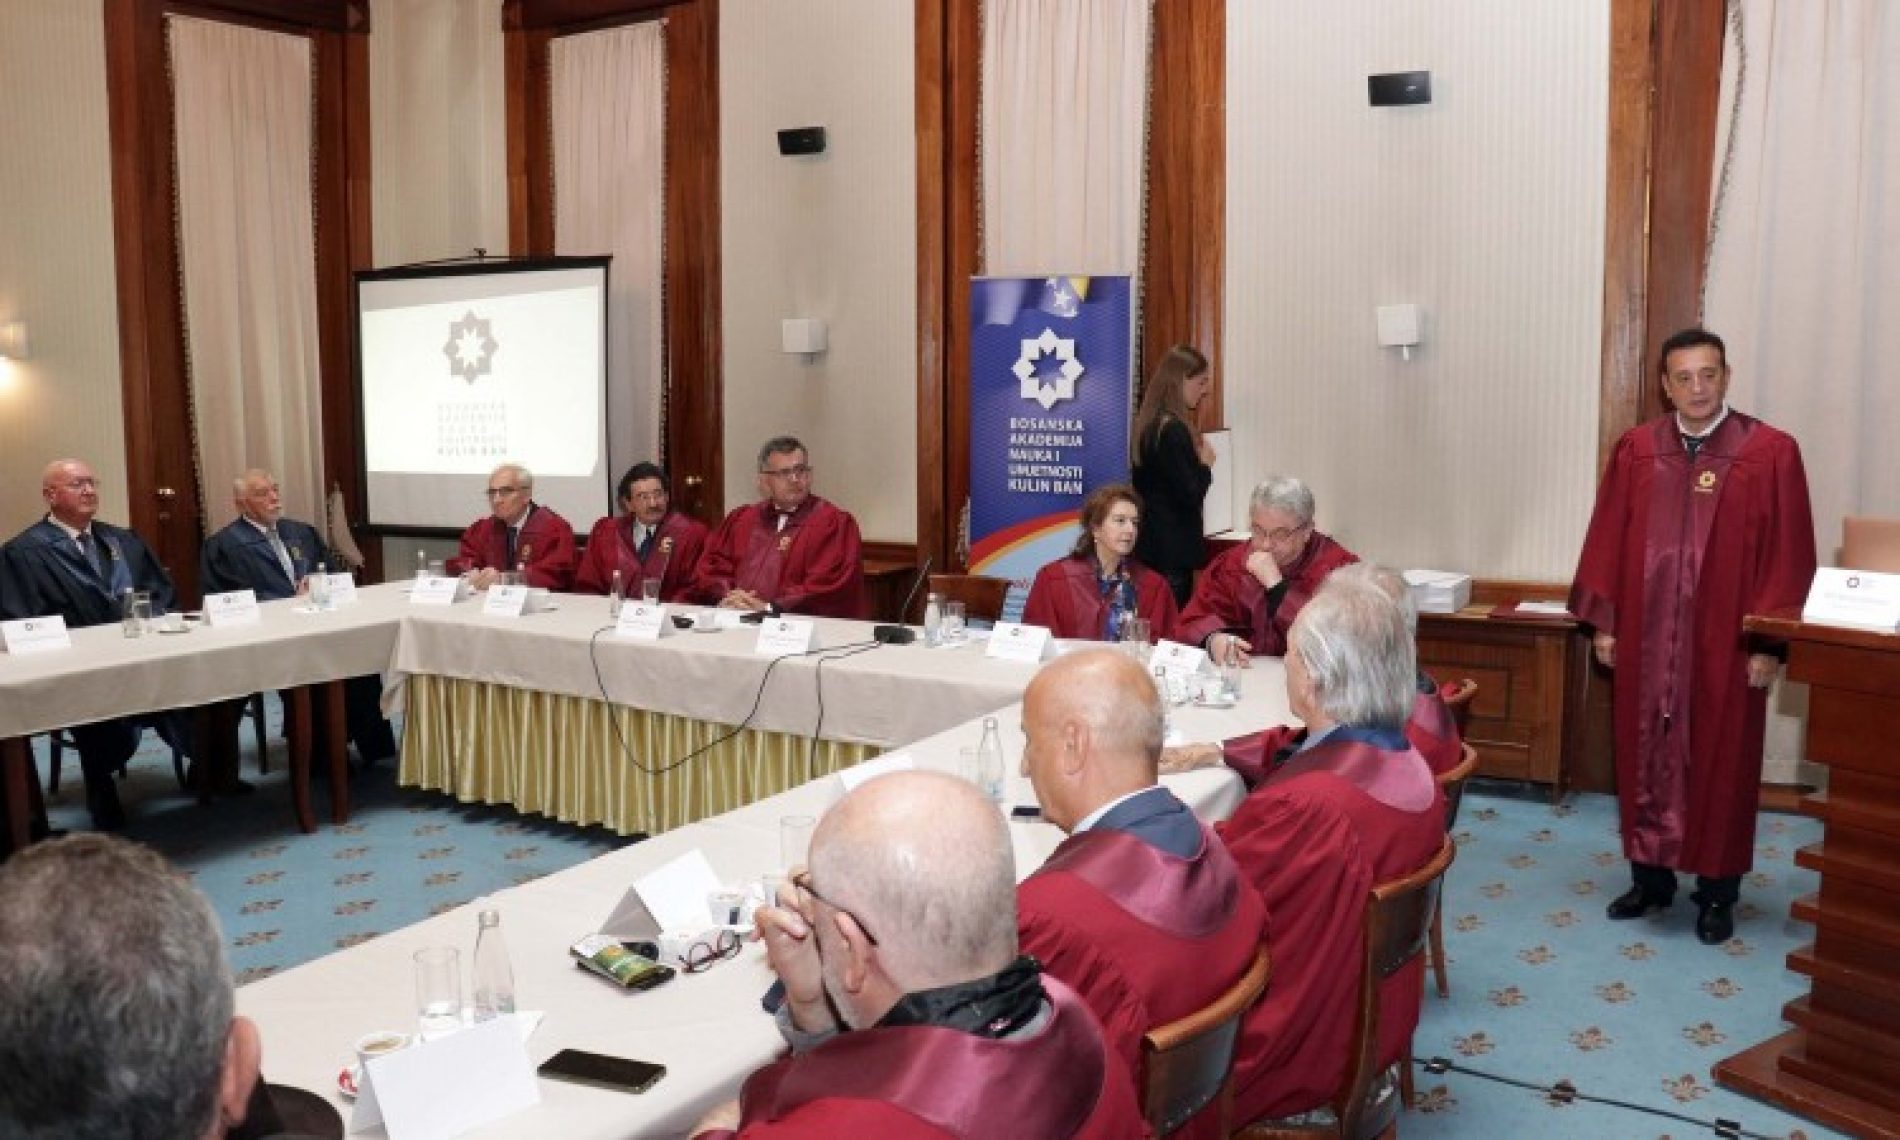 Bosanska akademija nauka i umjetnosti ‘Kulin ban’ dodijelila povelje i plakete istaknutim članovima